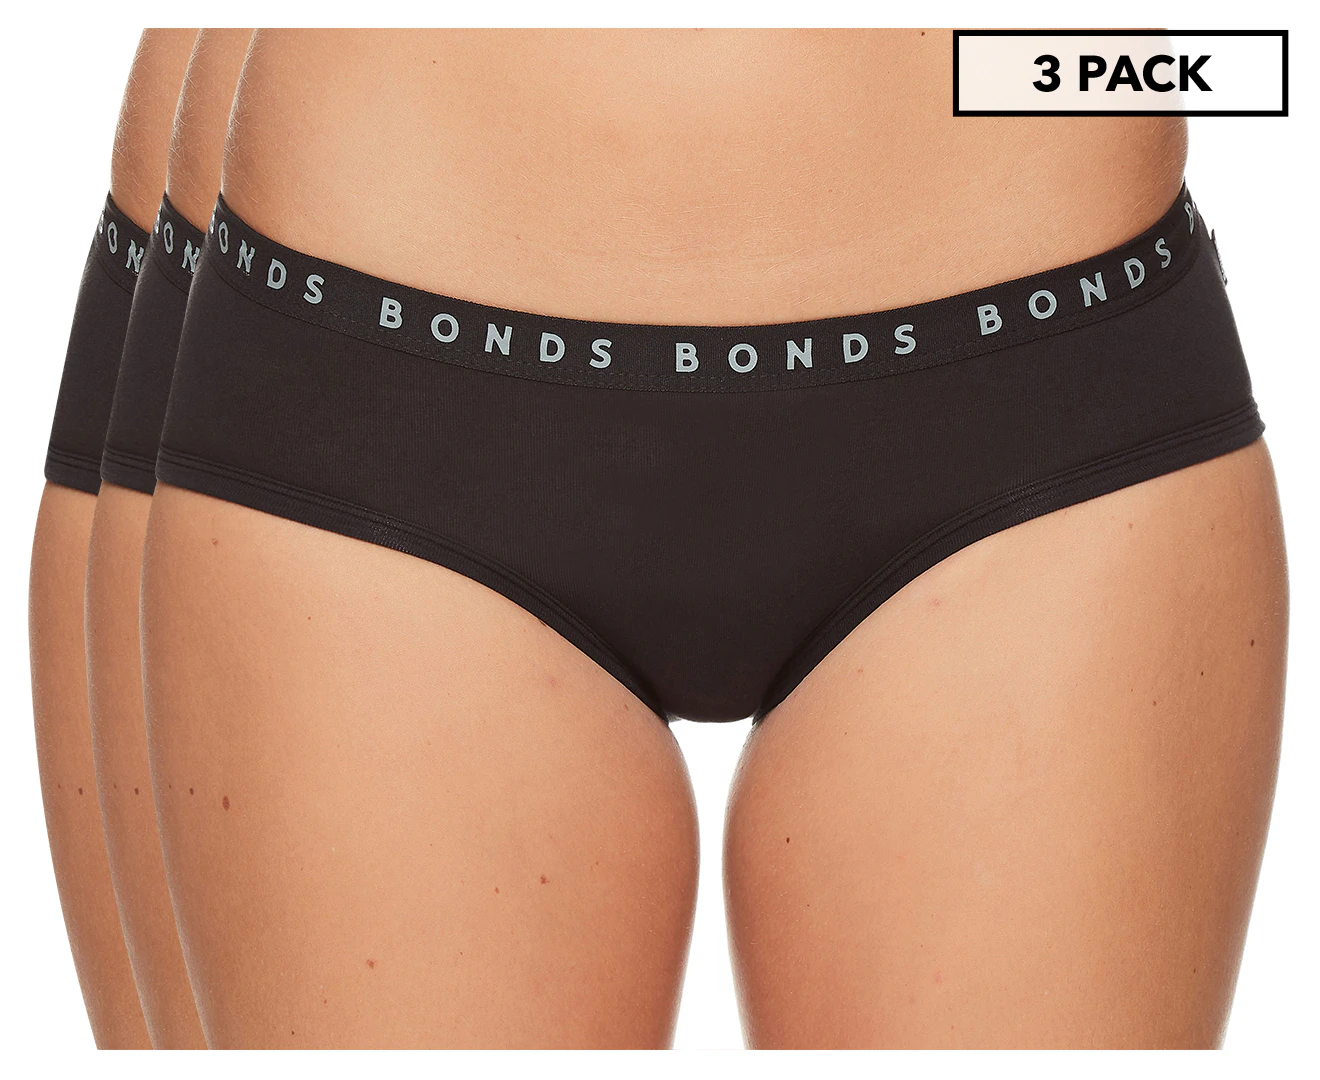 Bonds Women's Cottontails Full Briefs 3-Pack - Hidden Trop